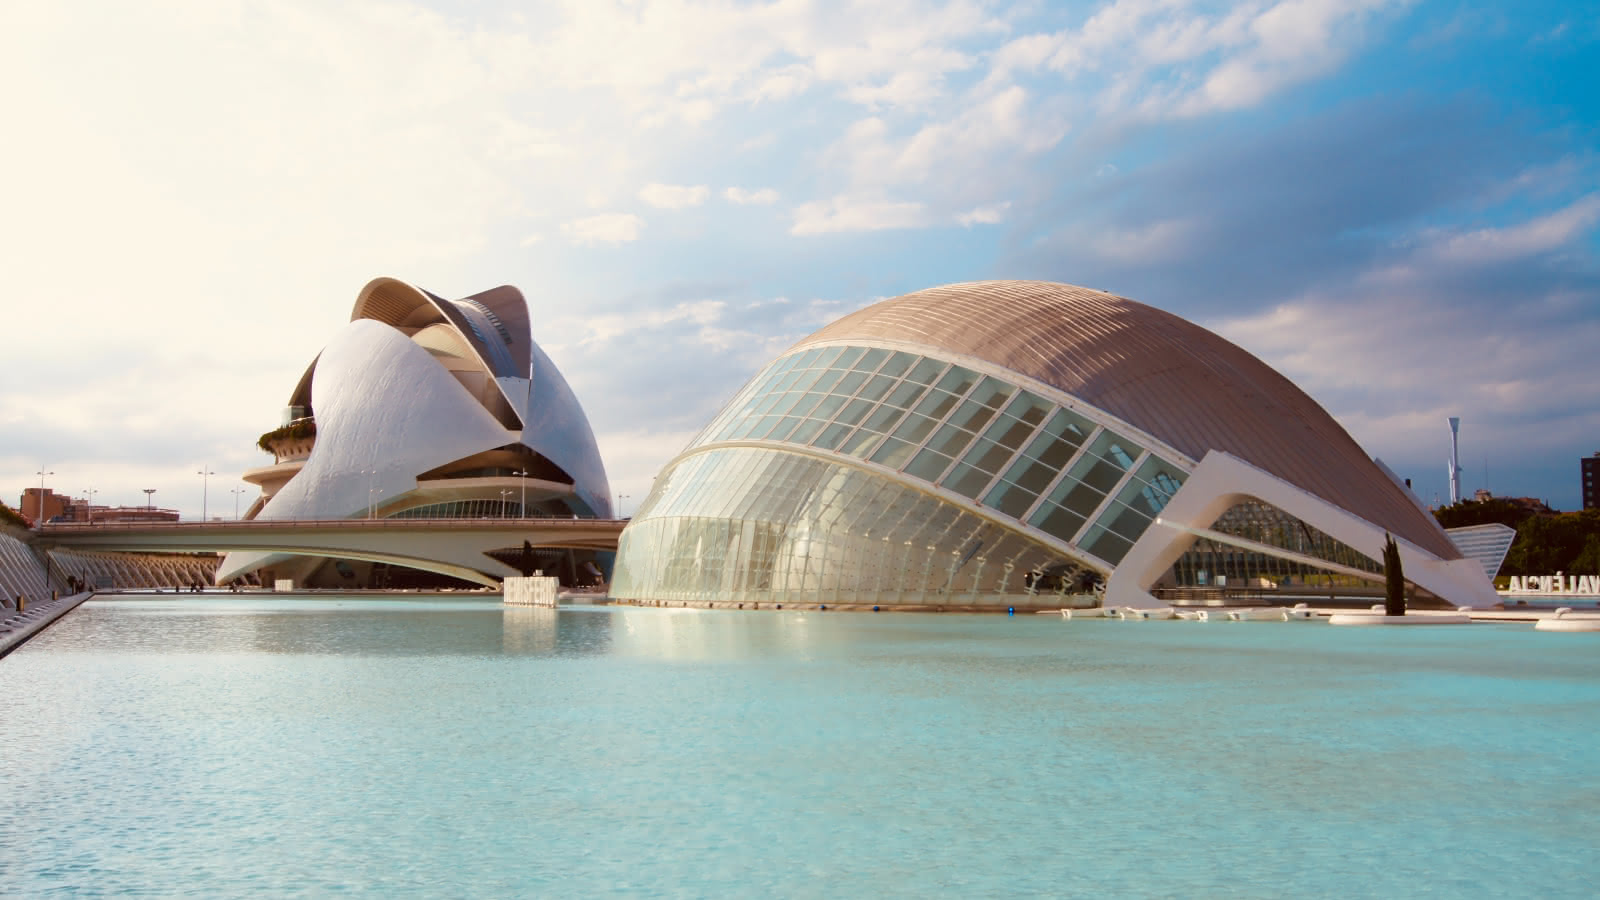 Iconic Architecture Valencia Free Tour SANDEMANs palacio de los ciencies